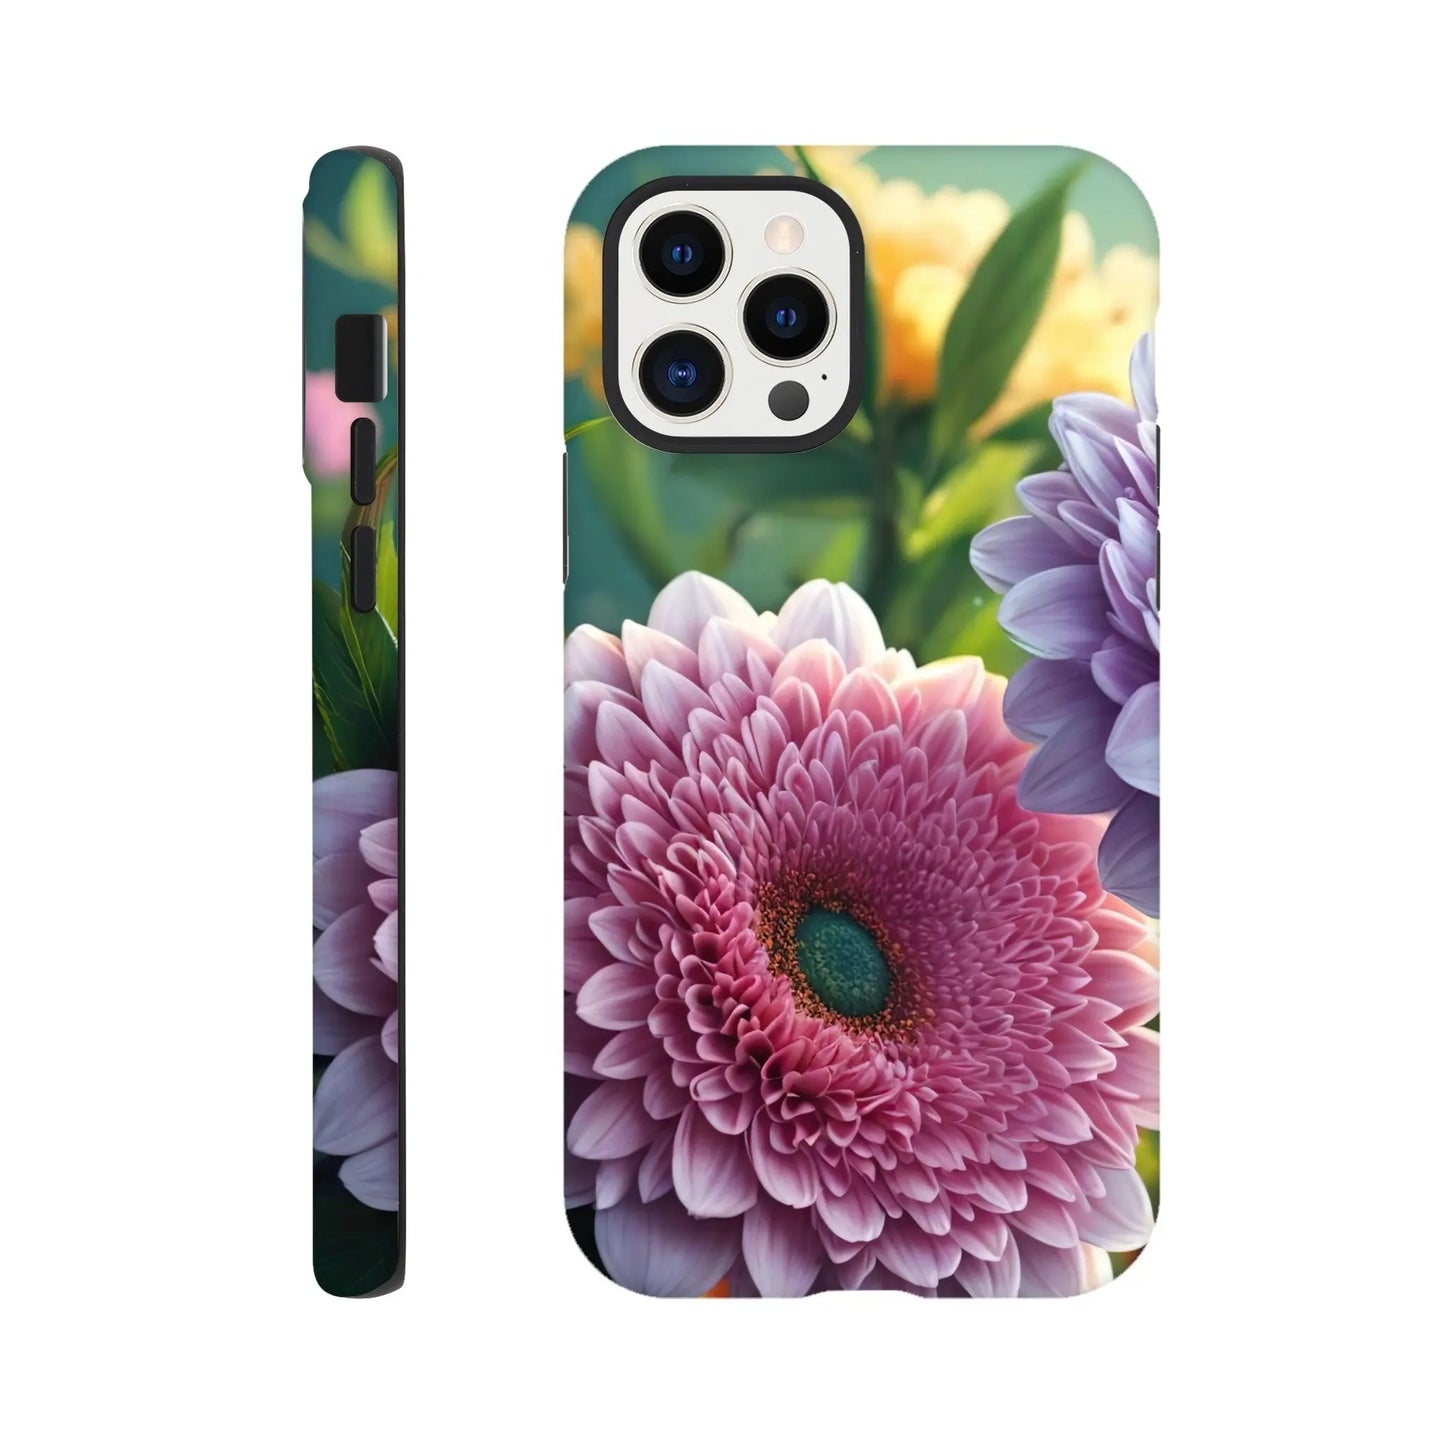 Smartphone-Hülle "Hart" - Blumen Vielfalt - Foto Stil, KI-Kunst, Pflanzen, iPhone-12-Pro - RolConArt